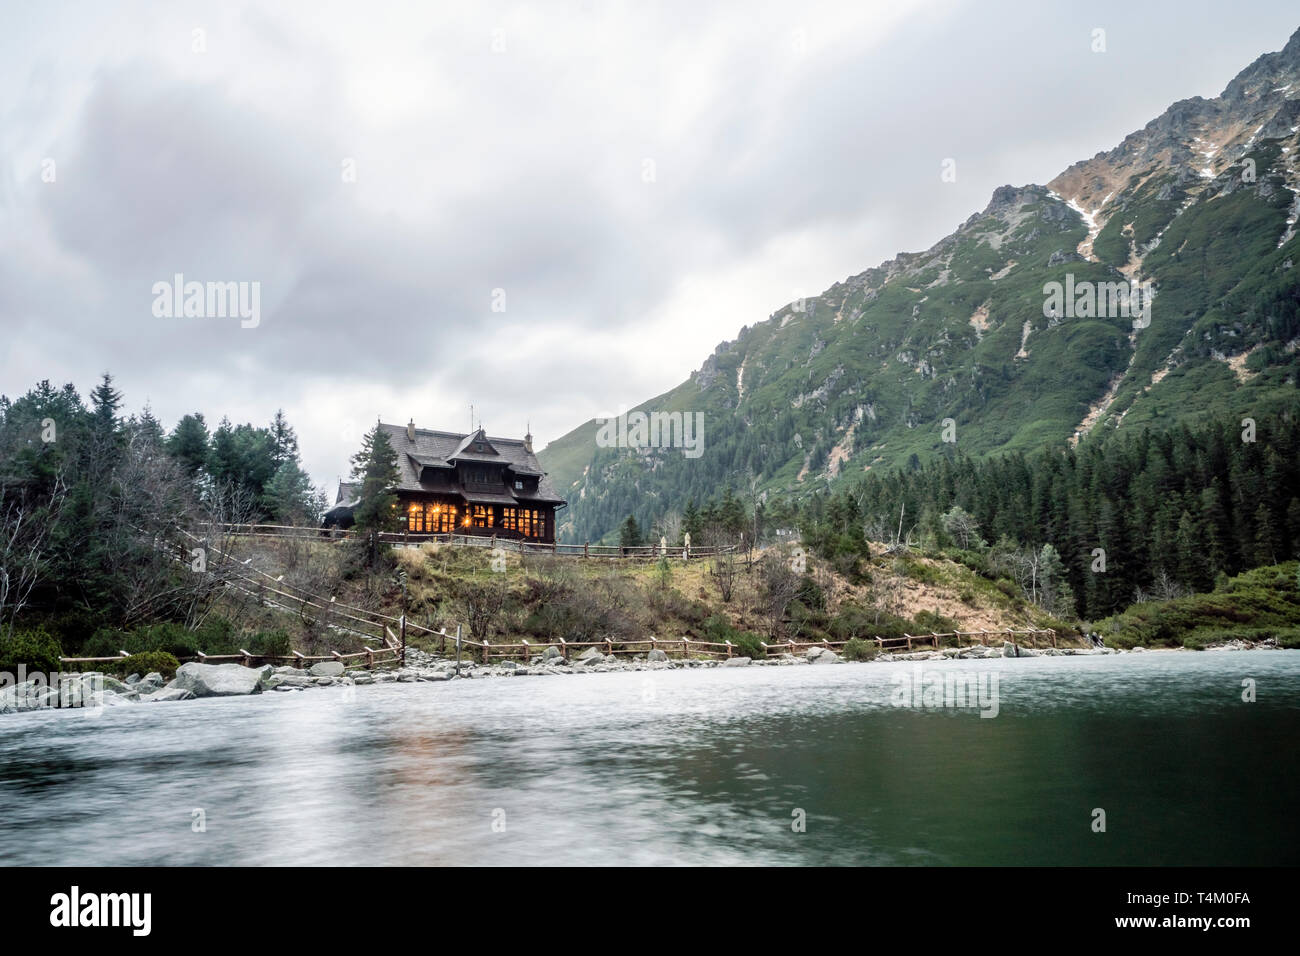 Un abri en bois chaleureux illuminé par le lac Morskie Oko dans les montagnes Tatras, Pologne Banque D'Images